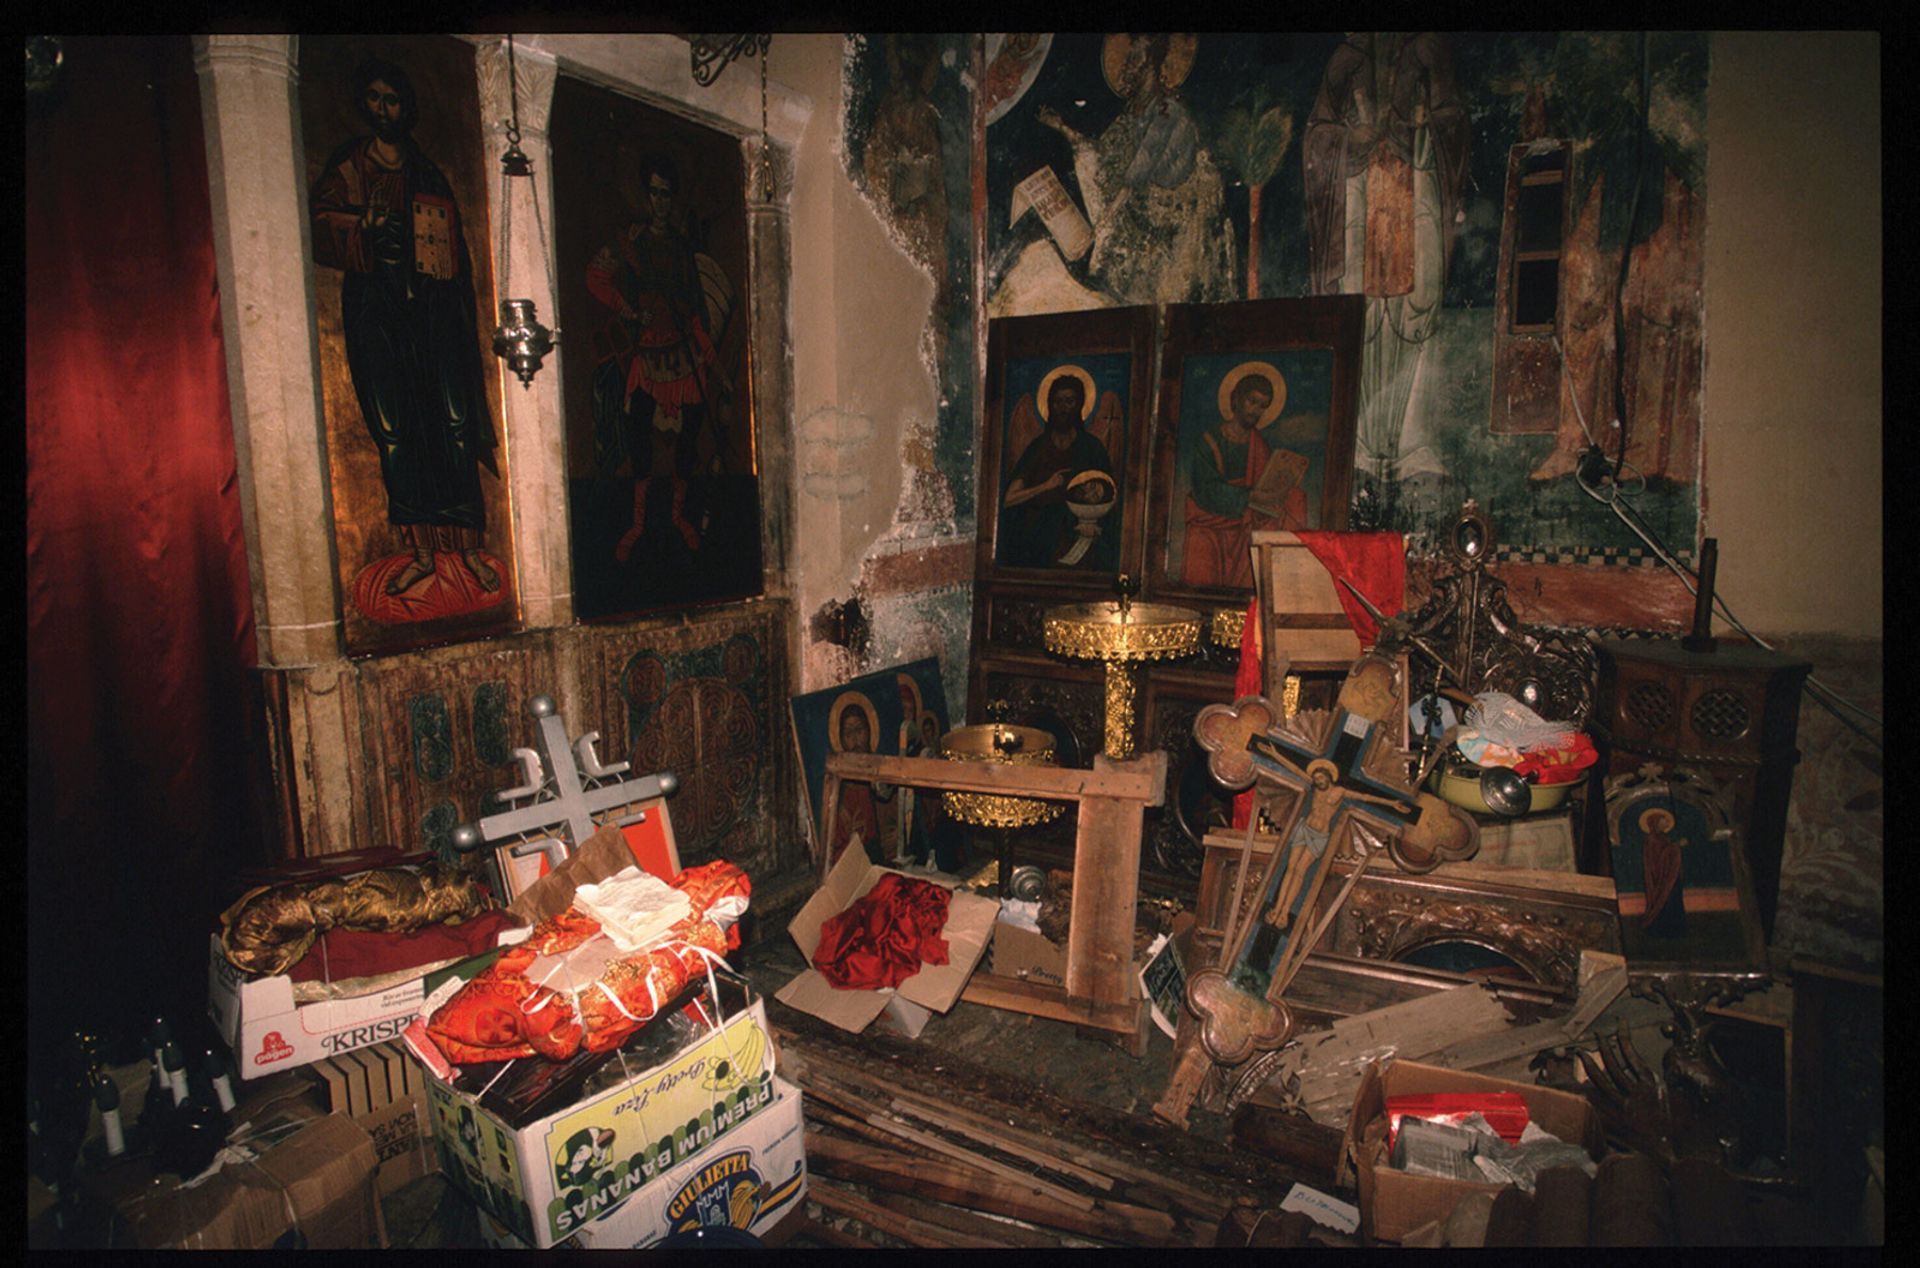 מחסן של חפצי אומנות שנבזזו מכנסיות שהופצצו בפק, קוסובו, לקראת סוף מלחמות יוגוסלביה של שנות ה-90

צילום: Scott Peterson/Liaison


